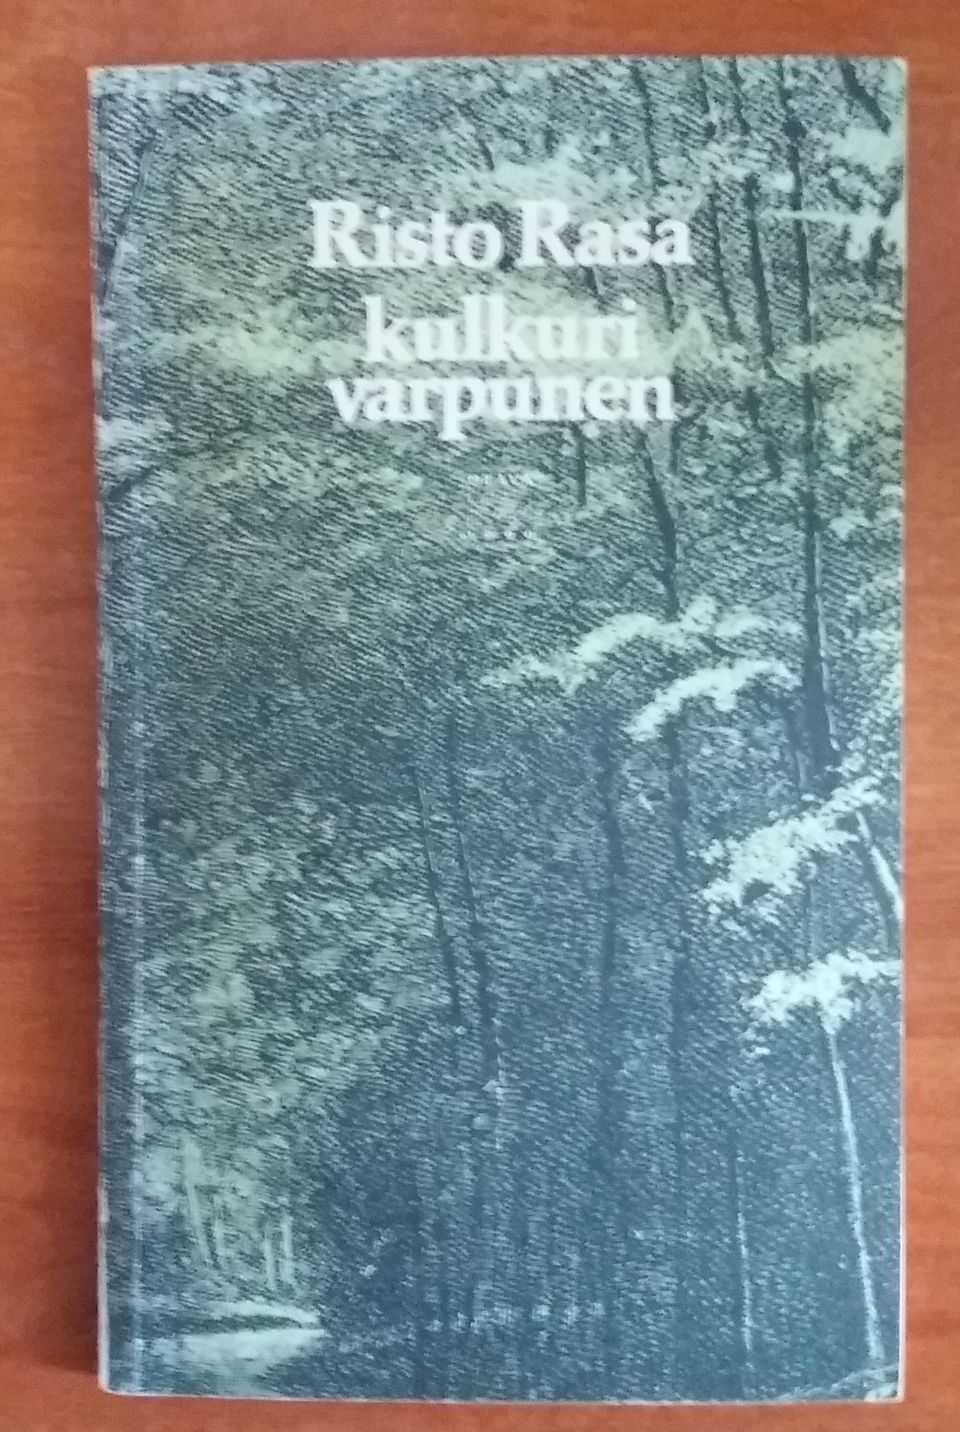 Risto Rasa KULKURIVARPUNEN Runoja Otava 3p 1979